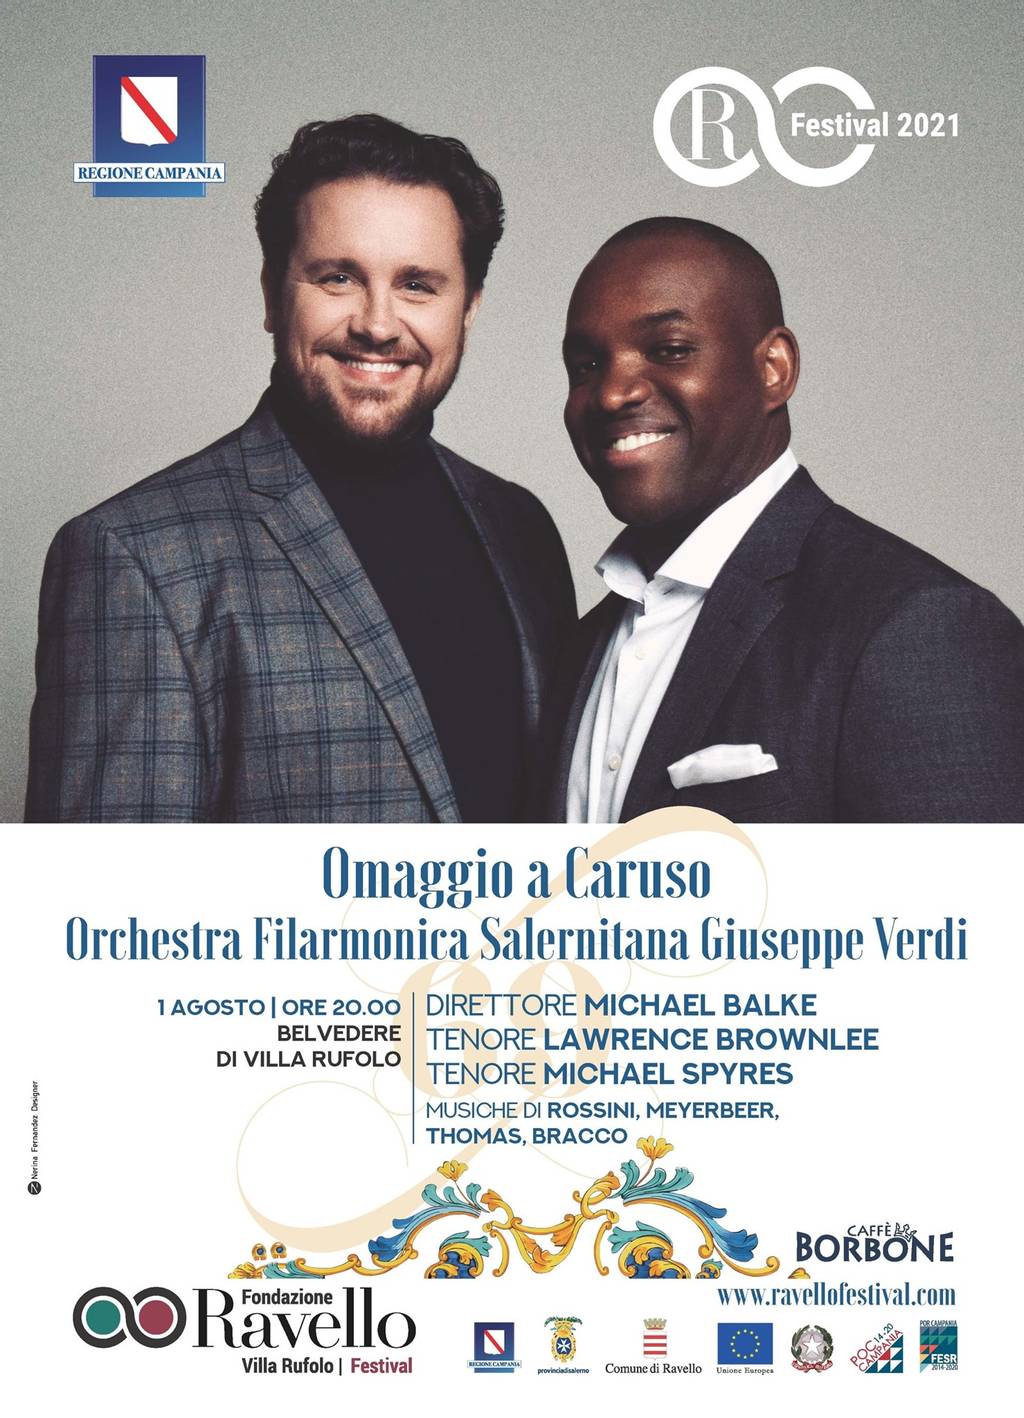 Omaggio a Caruso: Orchestra Filarmonica Salernitana Giuseppe Verdi